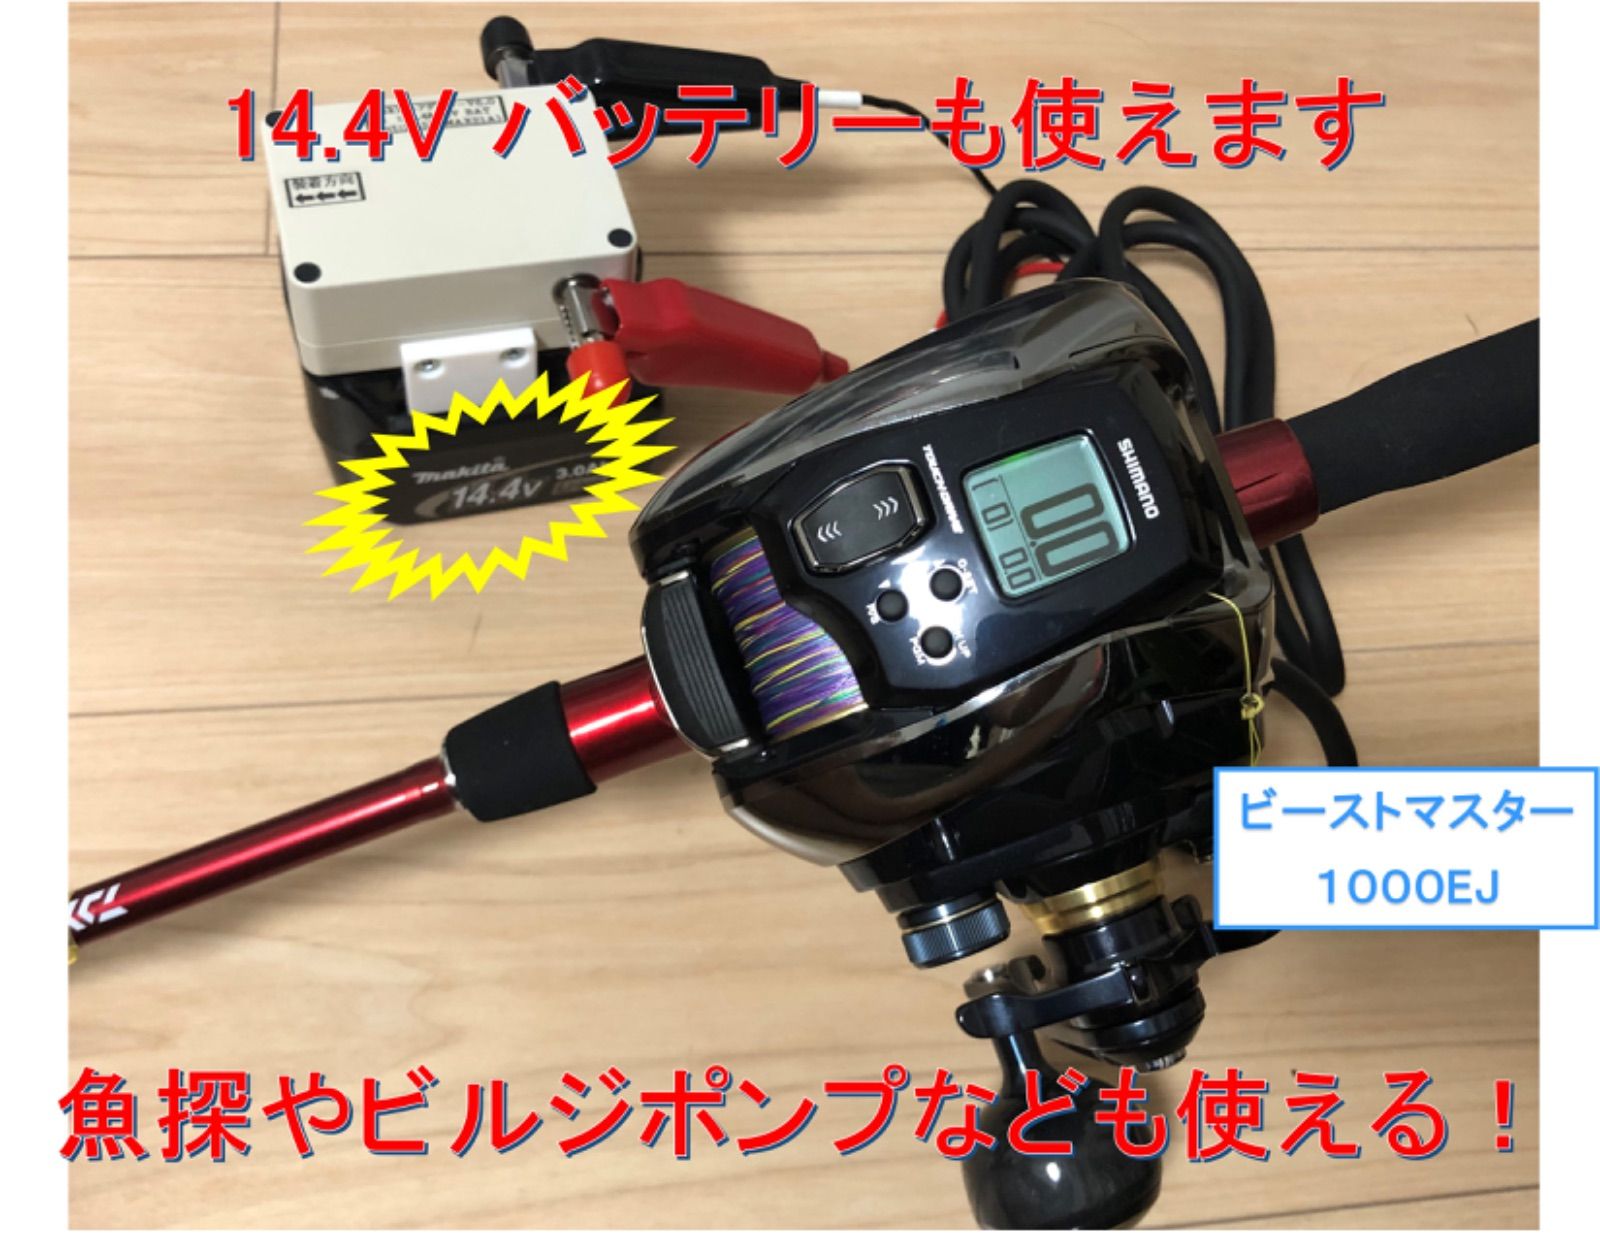 マキタ14.4Vバッテリ用 電動リール用アダプター(ワニ口) - リール